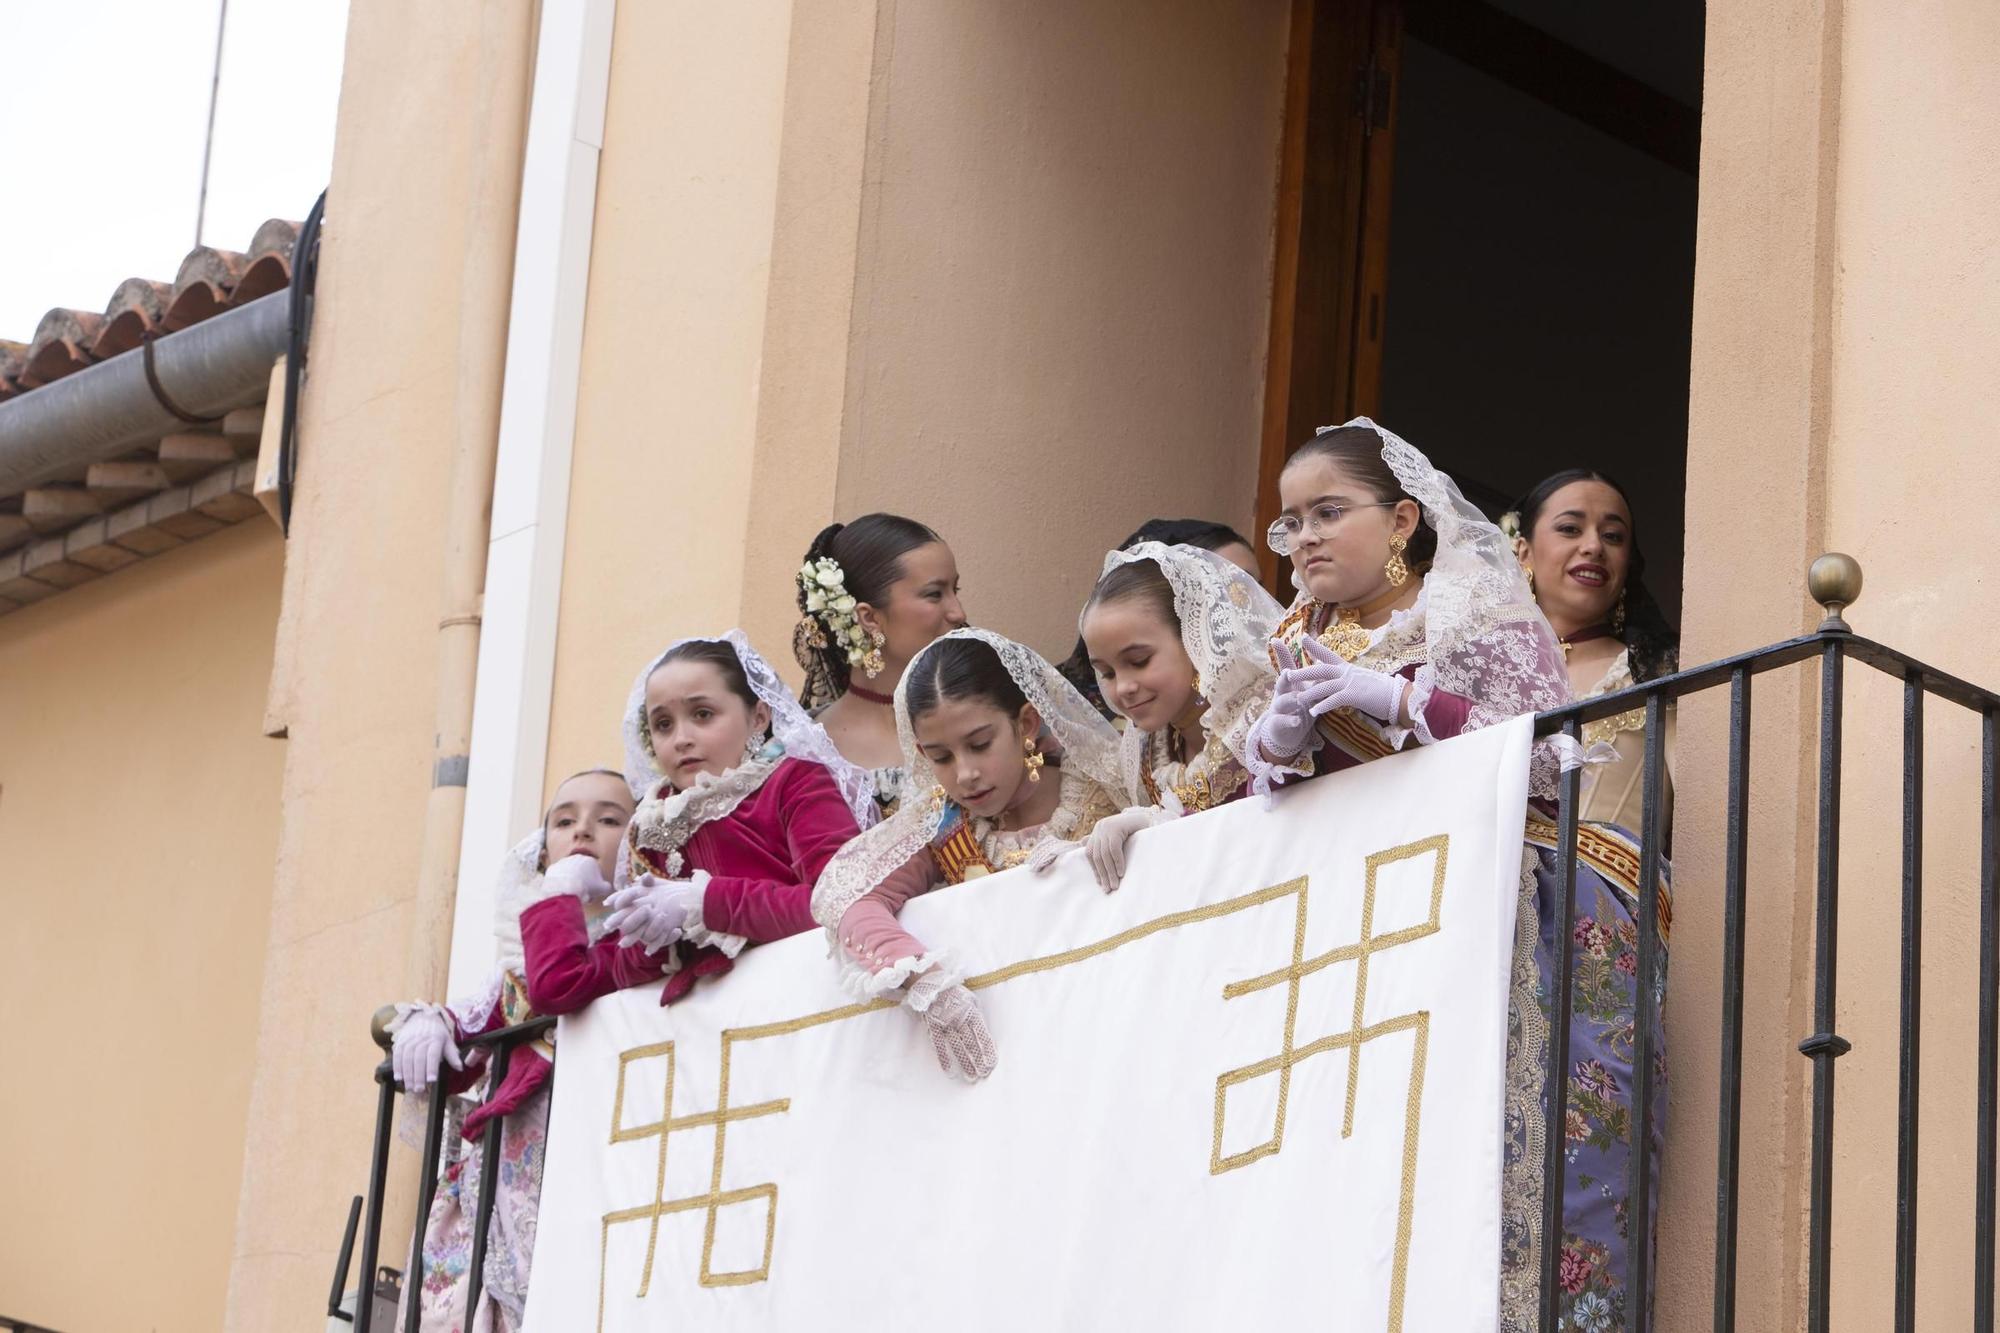 Canals se llena de "vítols" en el primer día de sus fiestas patronales